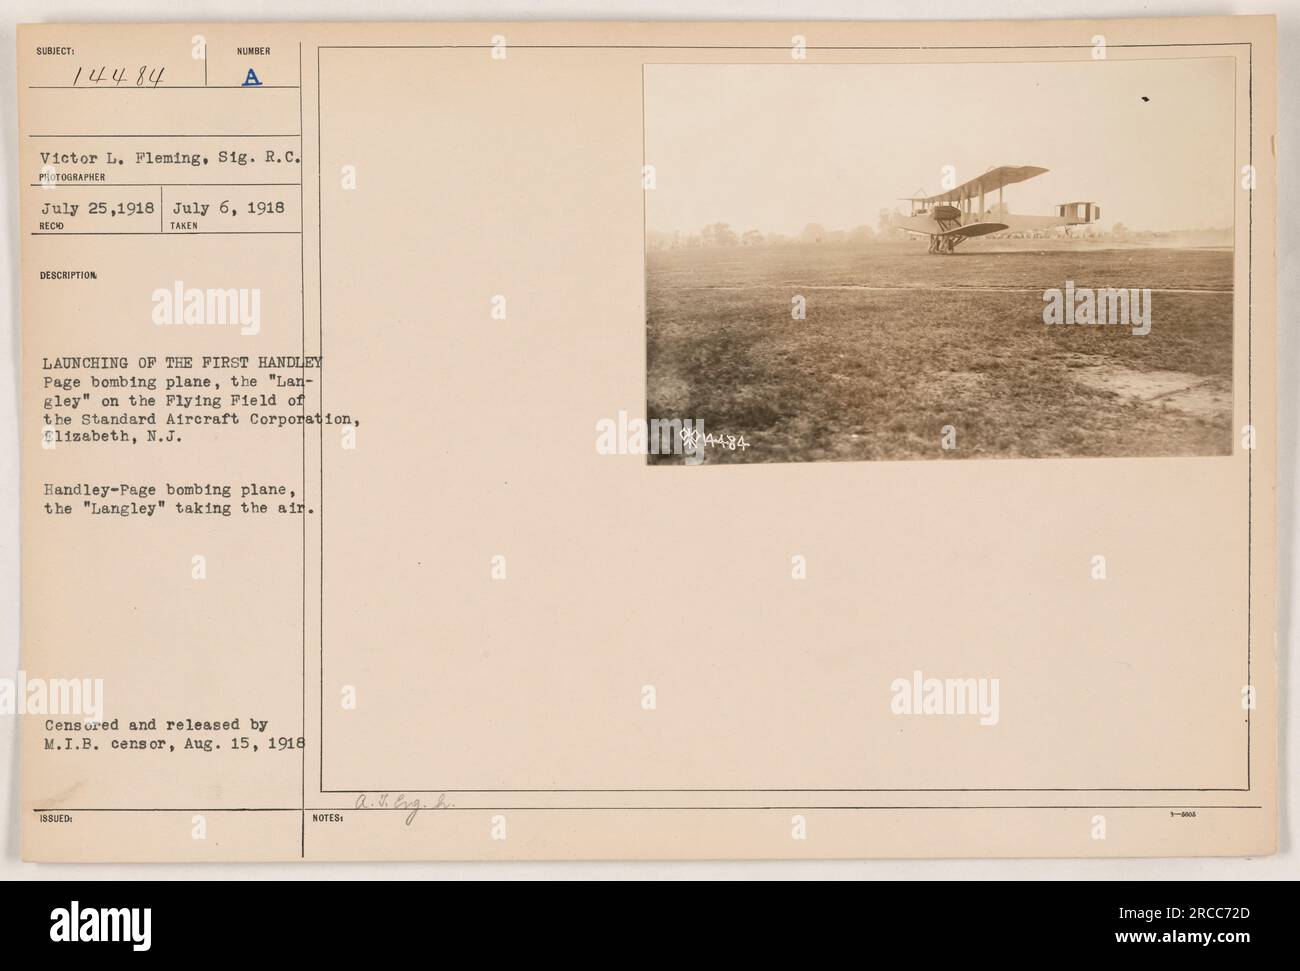 La photographie montre le lancement du premier avion de bombardement Handley-page, le Langley, au Flying Field de la Standard Aircraft Corporation à Elizabeth, New Jersey L'avion est vu décoller dans les airs. La photographie a été censurée et publiée par le censeur du M.I.B. le 15 août 1918. Banque D'Images